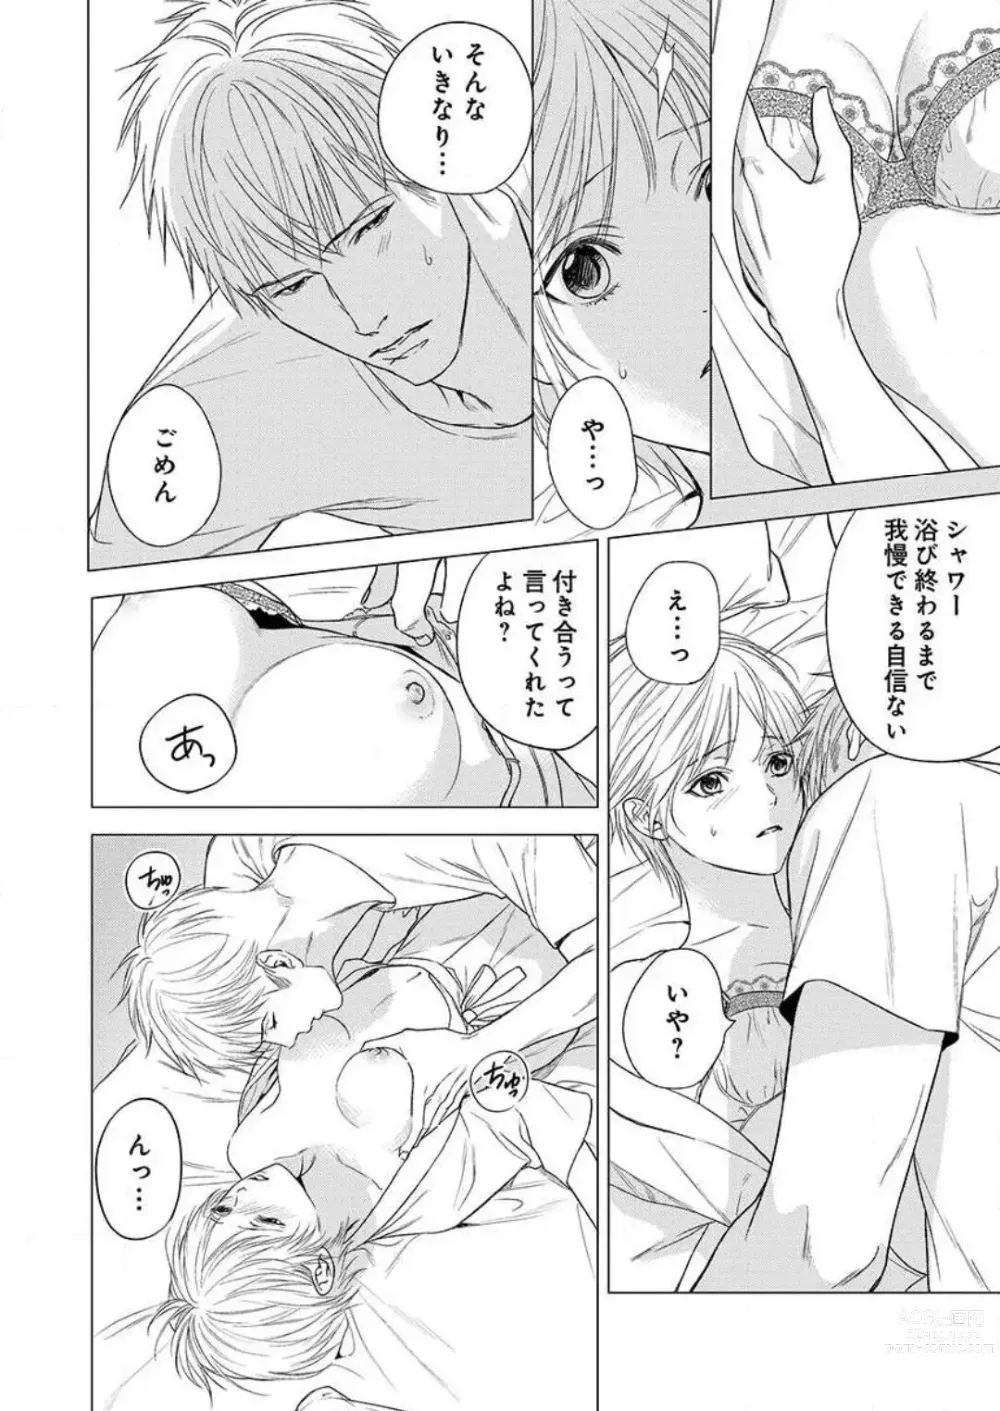 Page 151 of manga Furin Shoya, Yurusarenai Koi ni Oboreru Karada... 1-6